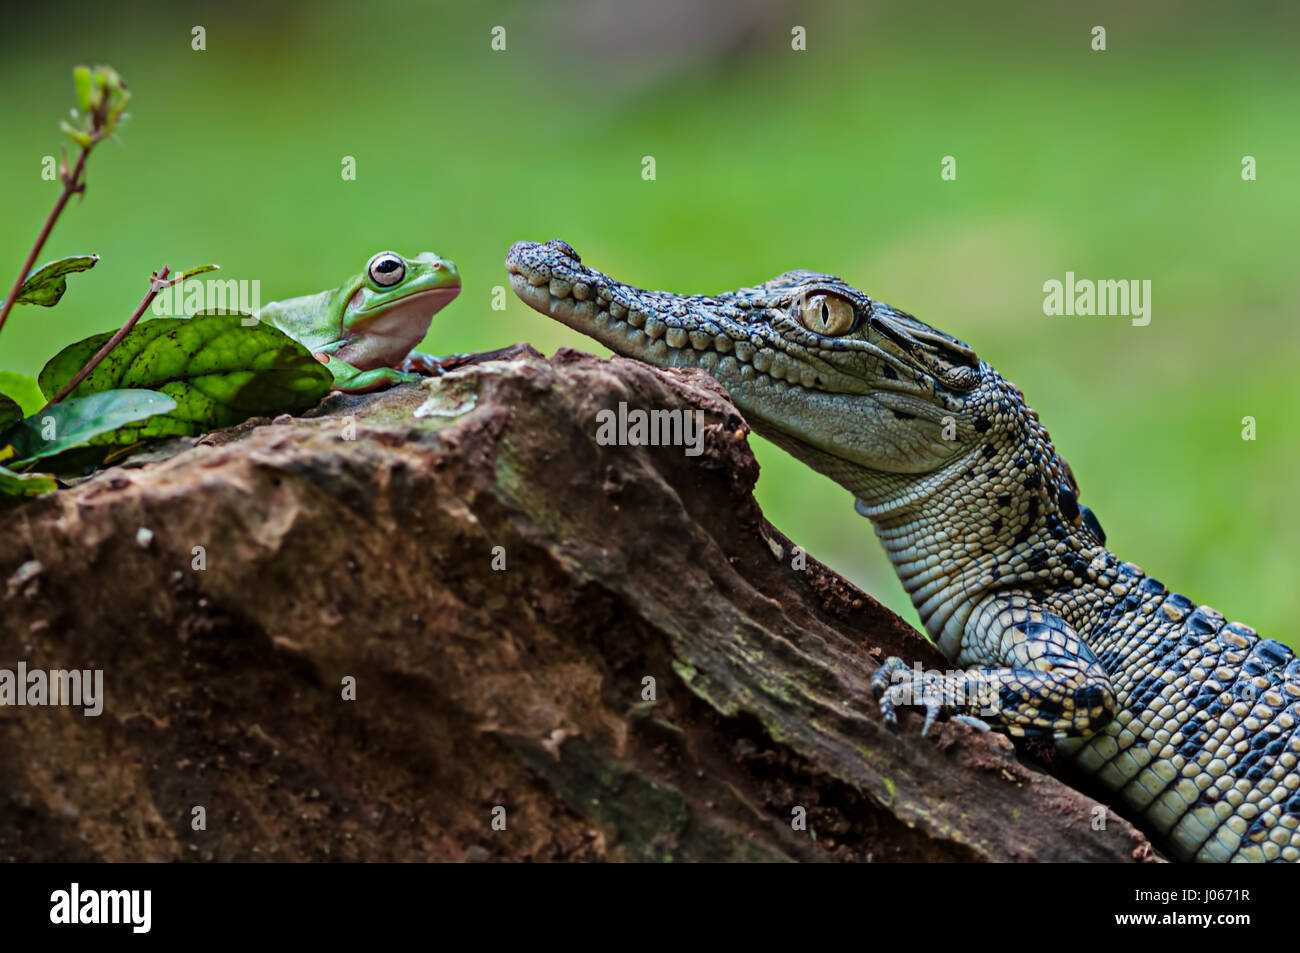 Le sud de JAKARTA, INDONÉSIE : des photos amusantes d'un brave grenouille d'arbre figurant à ouvrir les mâchoires d'un crocodile d'eau salée pour bébé ont été capturés par un photographe. La série d'images amusantes montrent l'improbable pals de détente sur une souche d'arbre comme la grenouille se tourne vers le croc avant de poser la tête sur le côté de la bouche ouverte de ce reptile. Une autre image montre comment les amphibiens grimpa sur l'agité la tête de crocodile. L'hilarant des coups de feu ont été prises par Roni Kurniawan (26) dans le sud de Jakarta, Indonésie. Roni utilisé un Canon 600D appareil photo pour capturer la surprenante rencontre. Roni Kurniawan / mediadr Banque D'Images